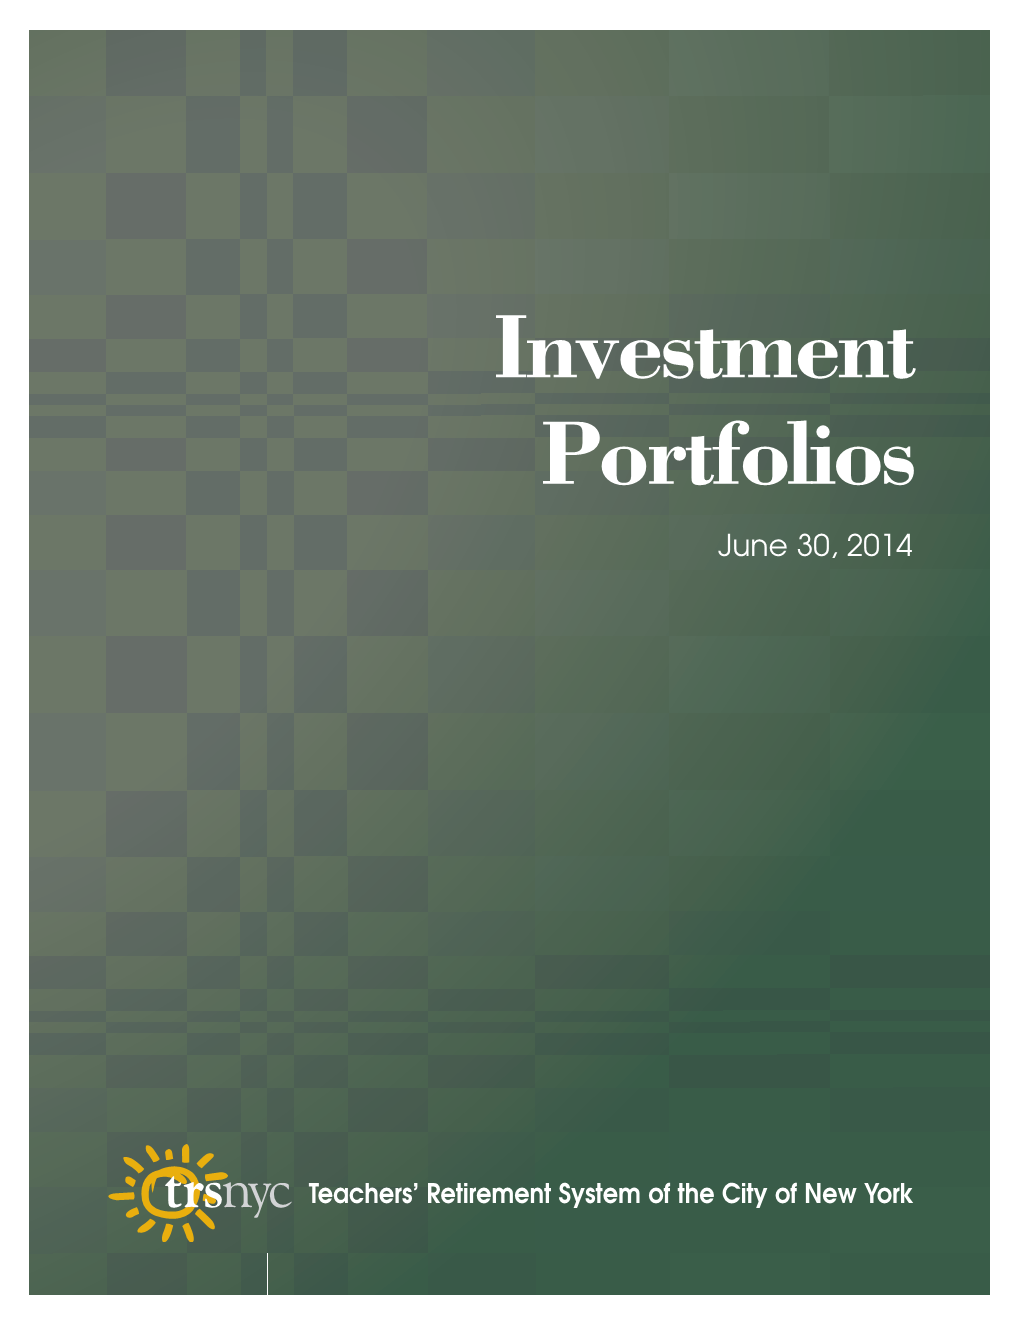 Investment Portfolio 2014